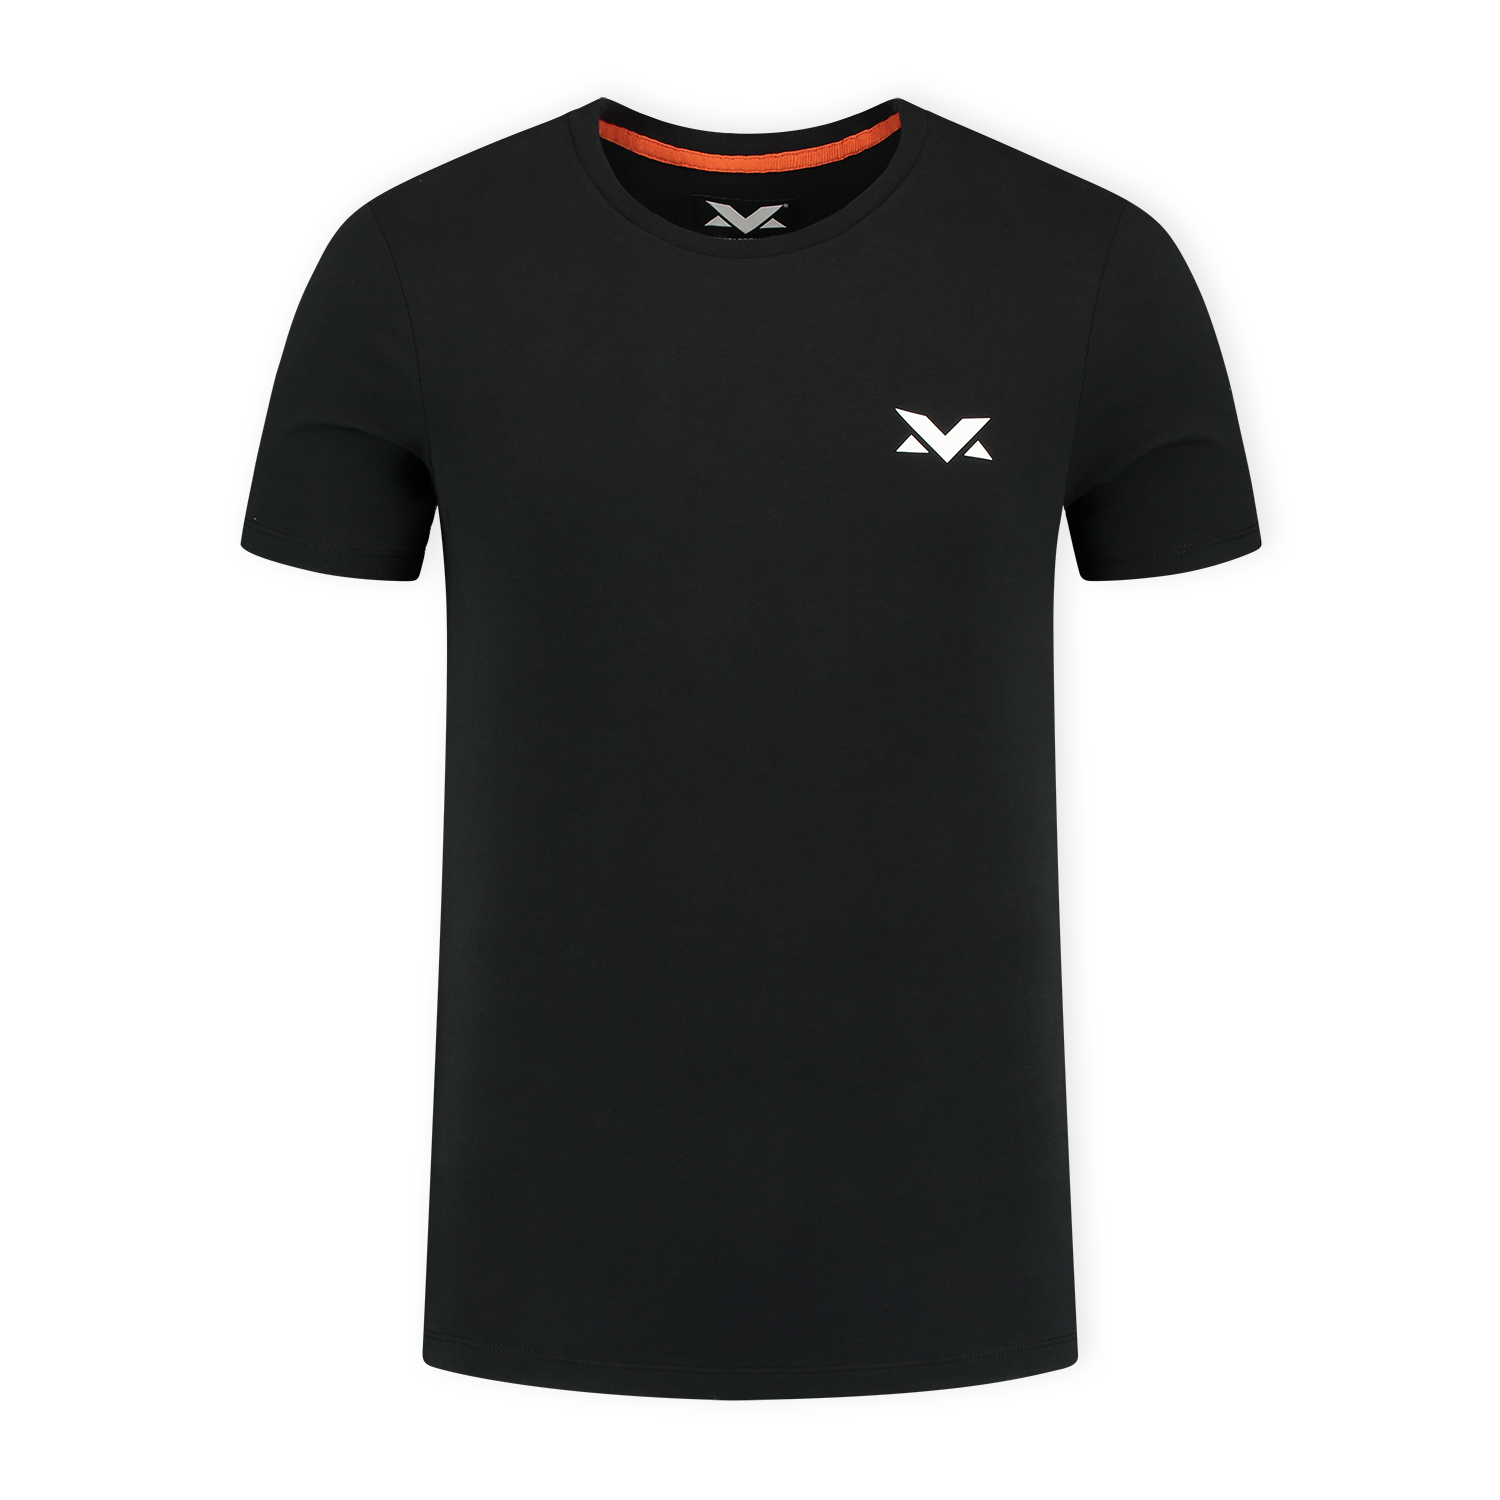 MV T-shirt The Limits - Zwart - M - Max Verstappen